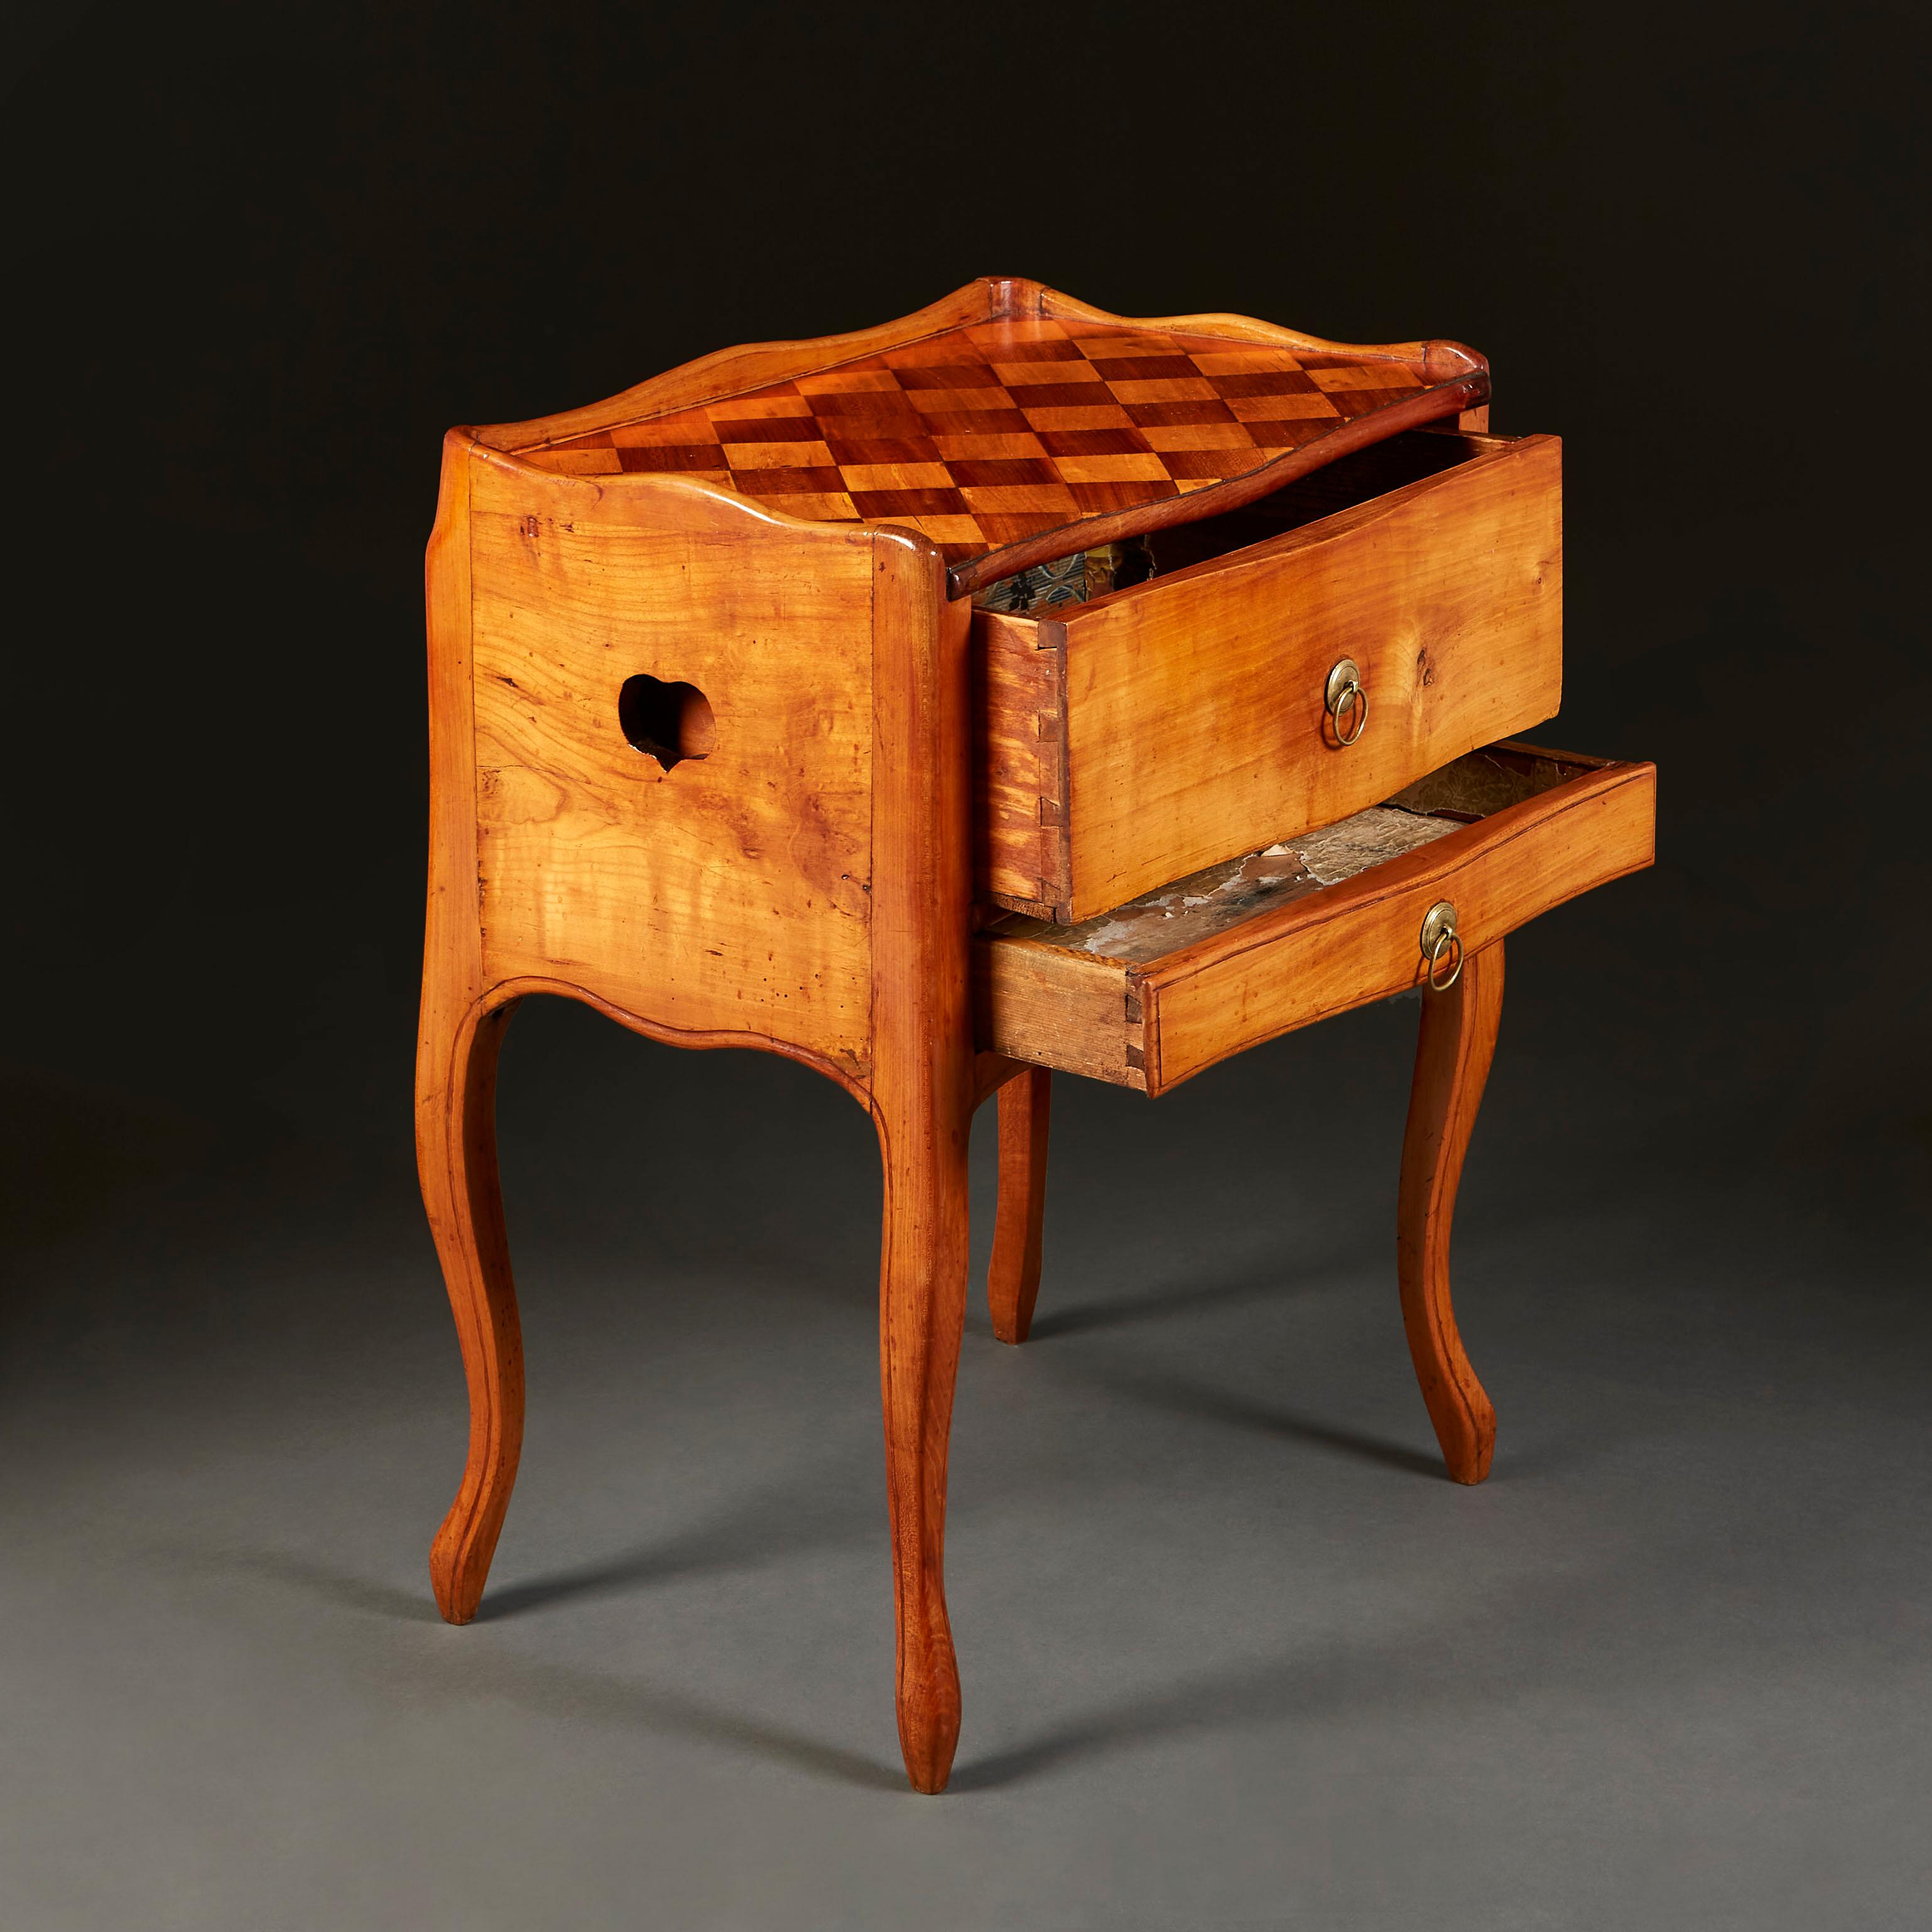 Ein Louis XV Nachttisch aus satiniertem Holz mit zwei Schubladen auf der Vorderseite und herzförmigen Griffen an der Seite. Eine Galerie umgibt die schachbrettartige Intarsienplatte, die auf Kabriolettbeinen mit geformter Schürze steht.